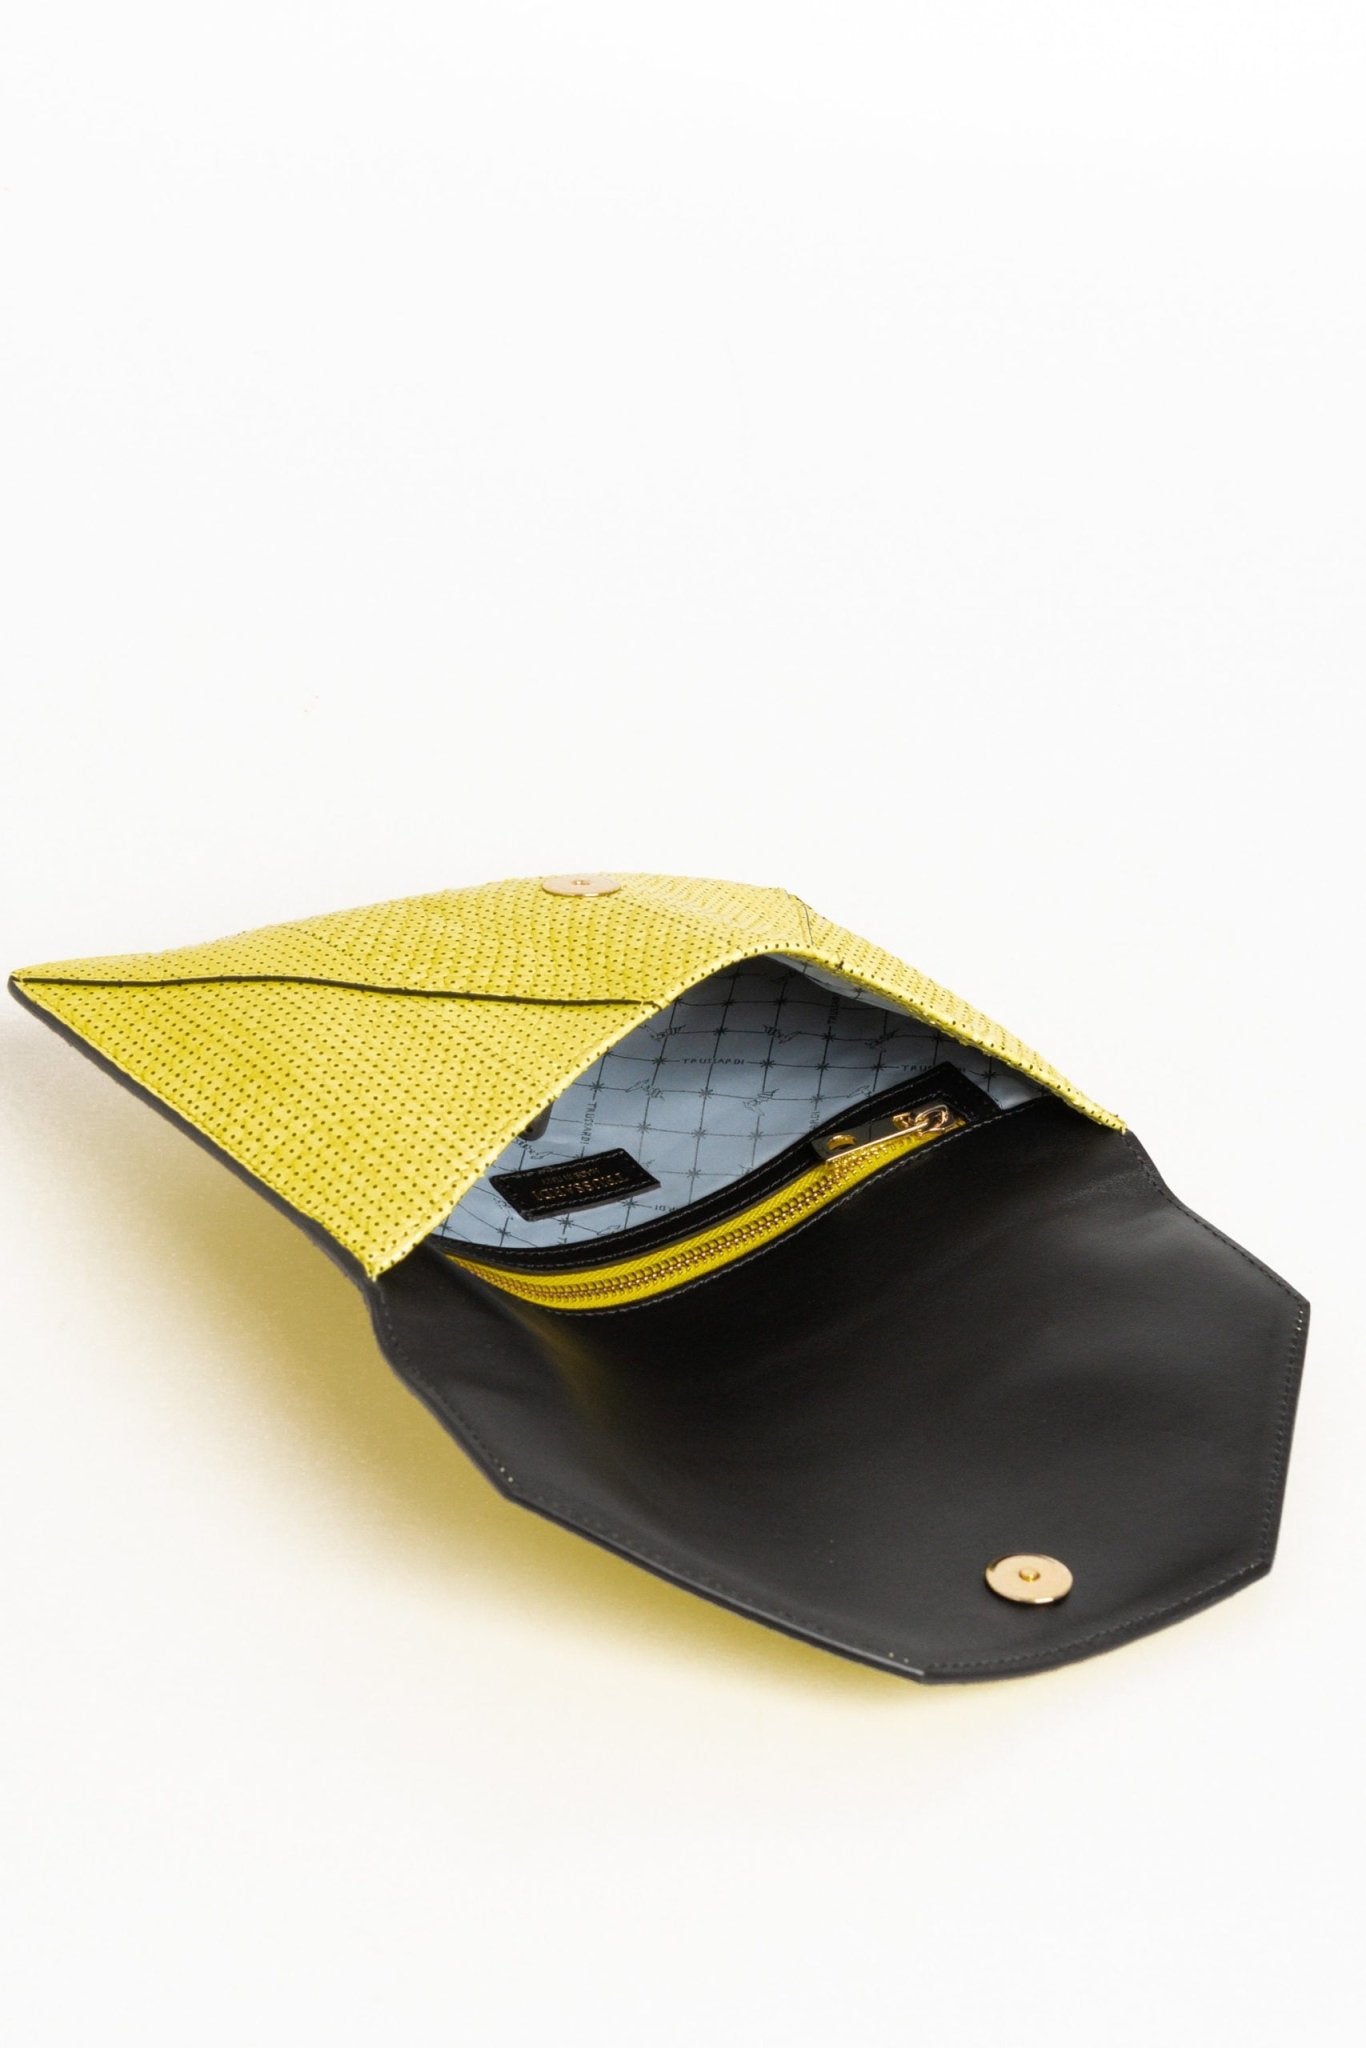 Trussardi Yellow Leather Clutch Bag - Fizigo